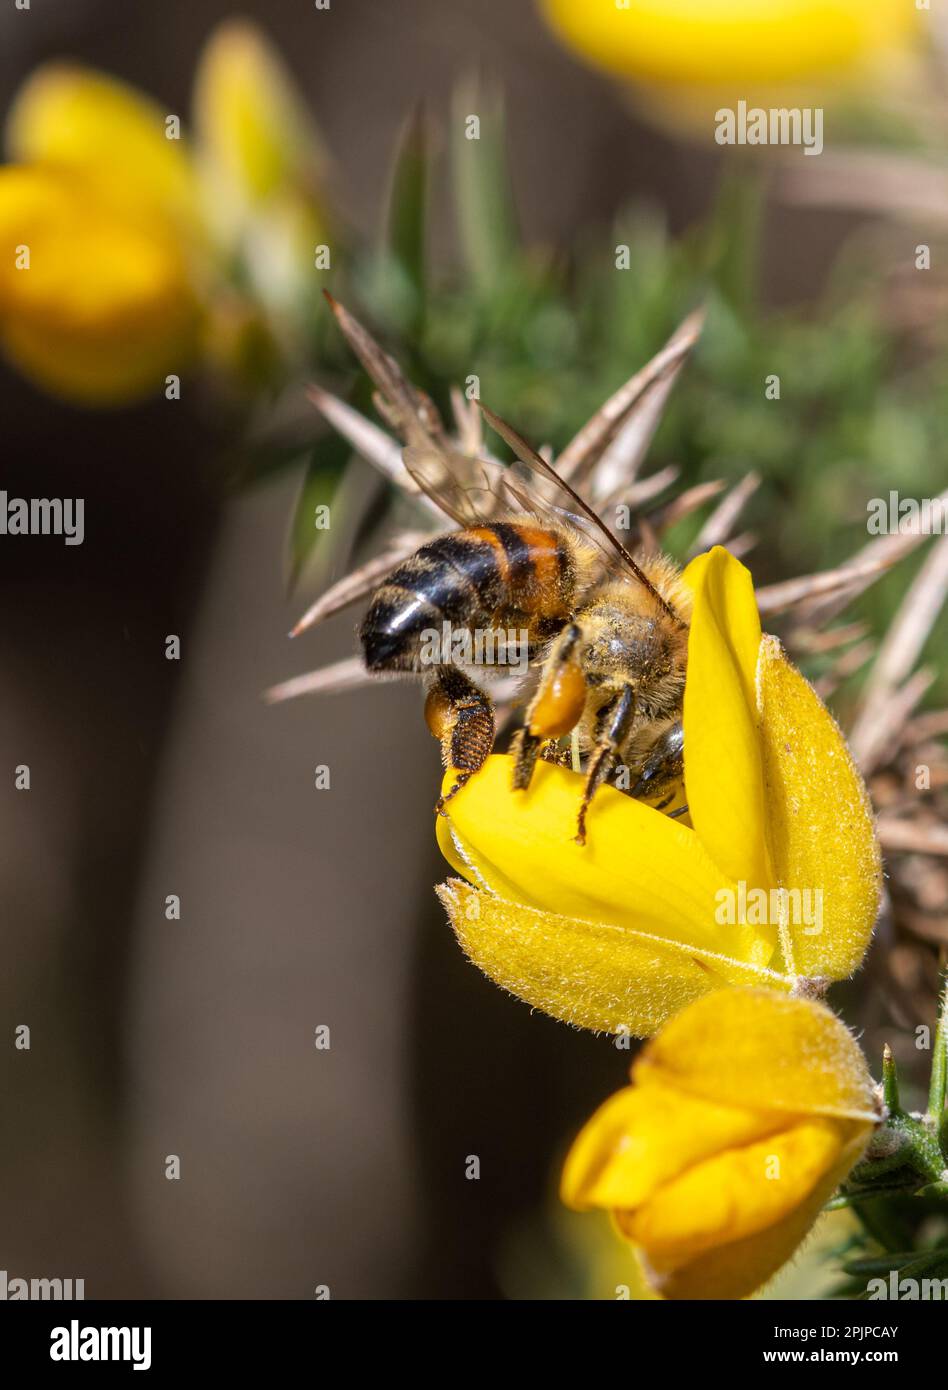 Westliche Honigbiene (APIs mellifera, auch als europäische Honigbiene bezeichnet), die im Frühling in Surrey, England, Nektar und Pollen aus Gänseblümchen sammelt Stockfoto